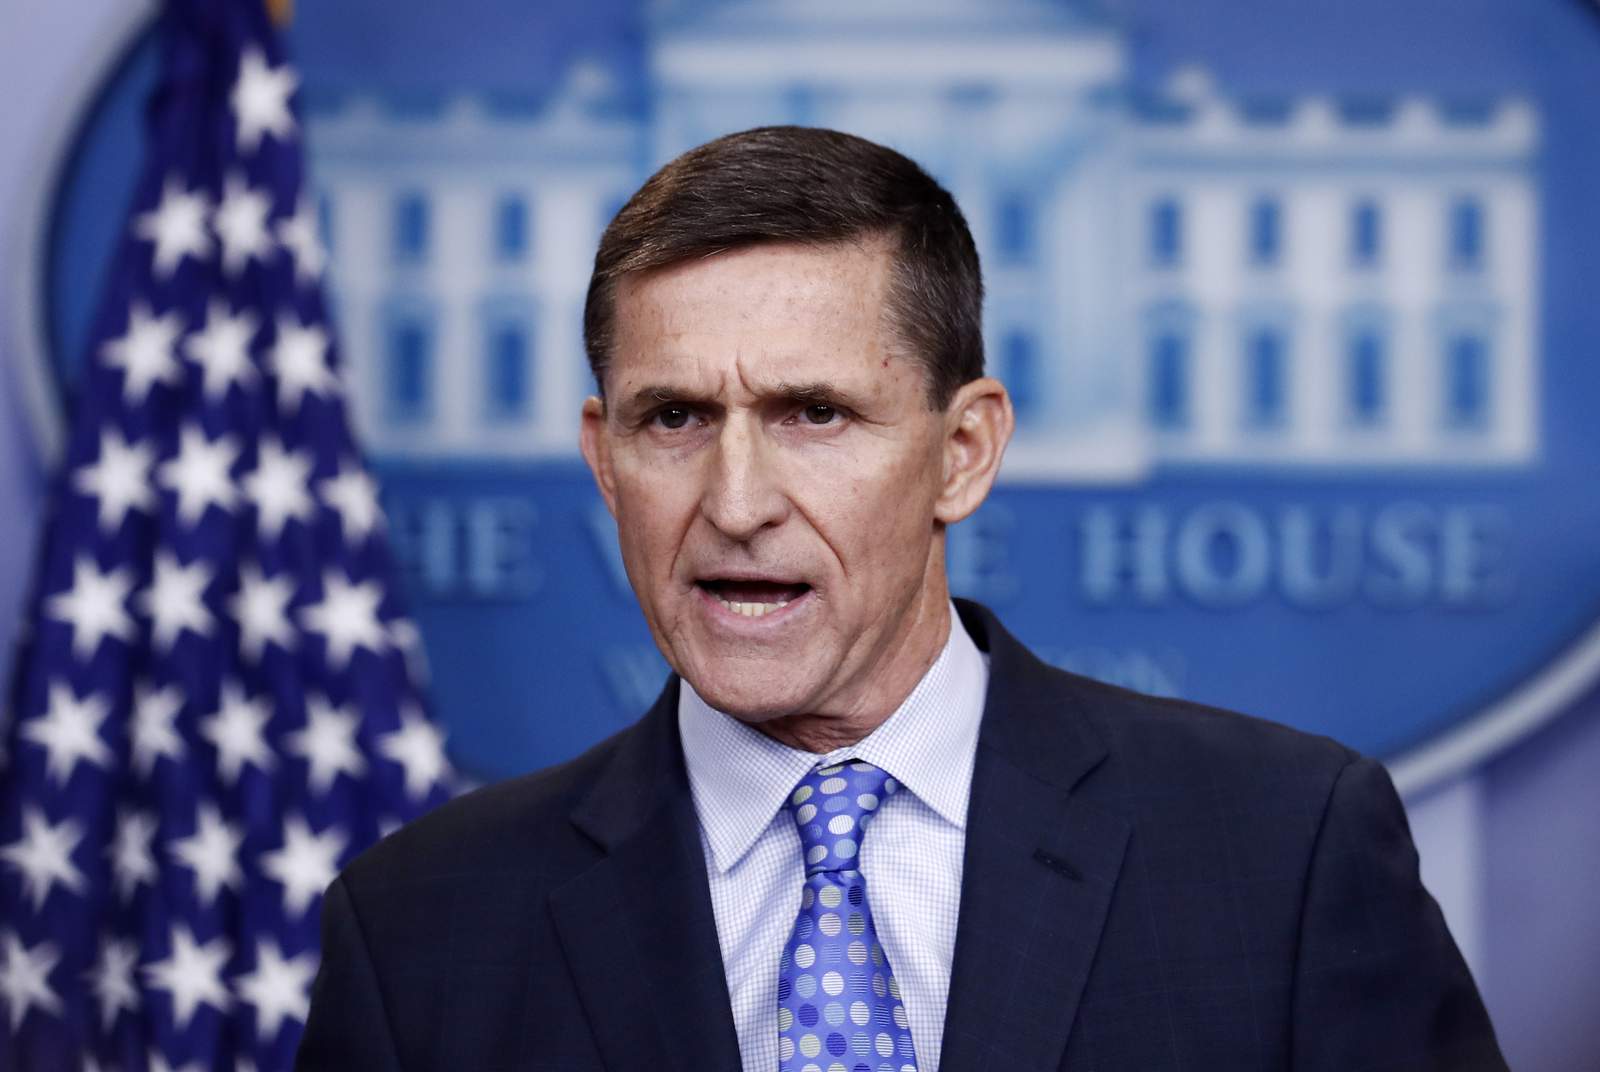 President Trump pardons Flynn despite guilty plea